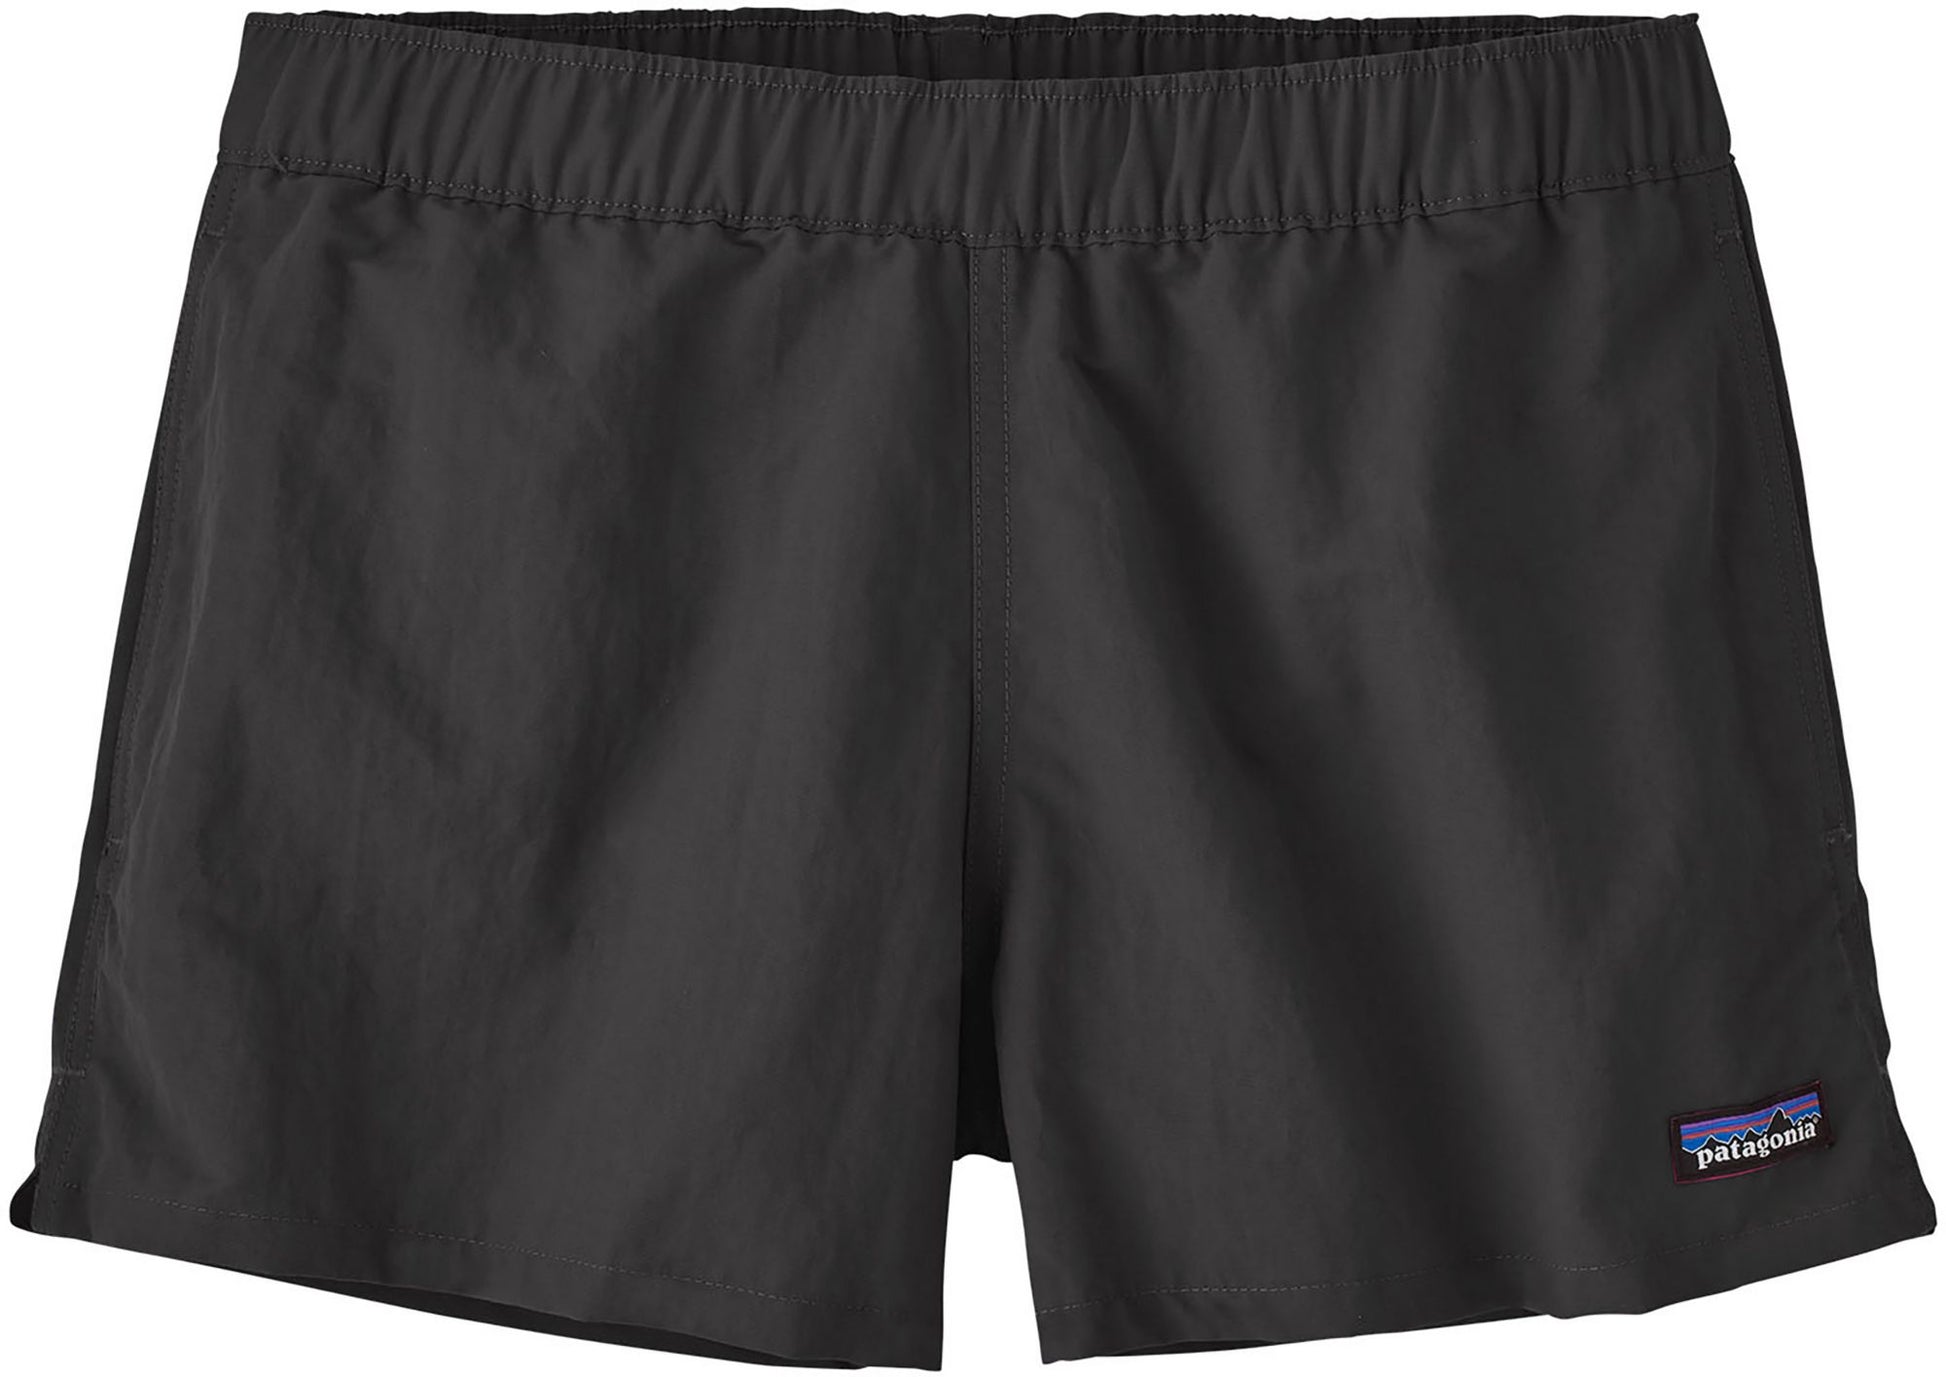 Women's Barely Baggies Shorts